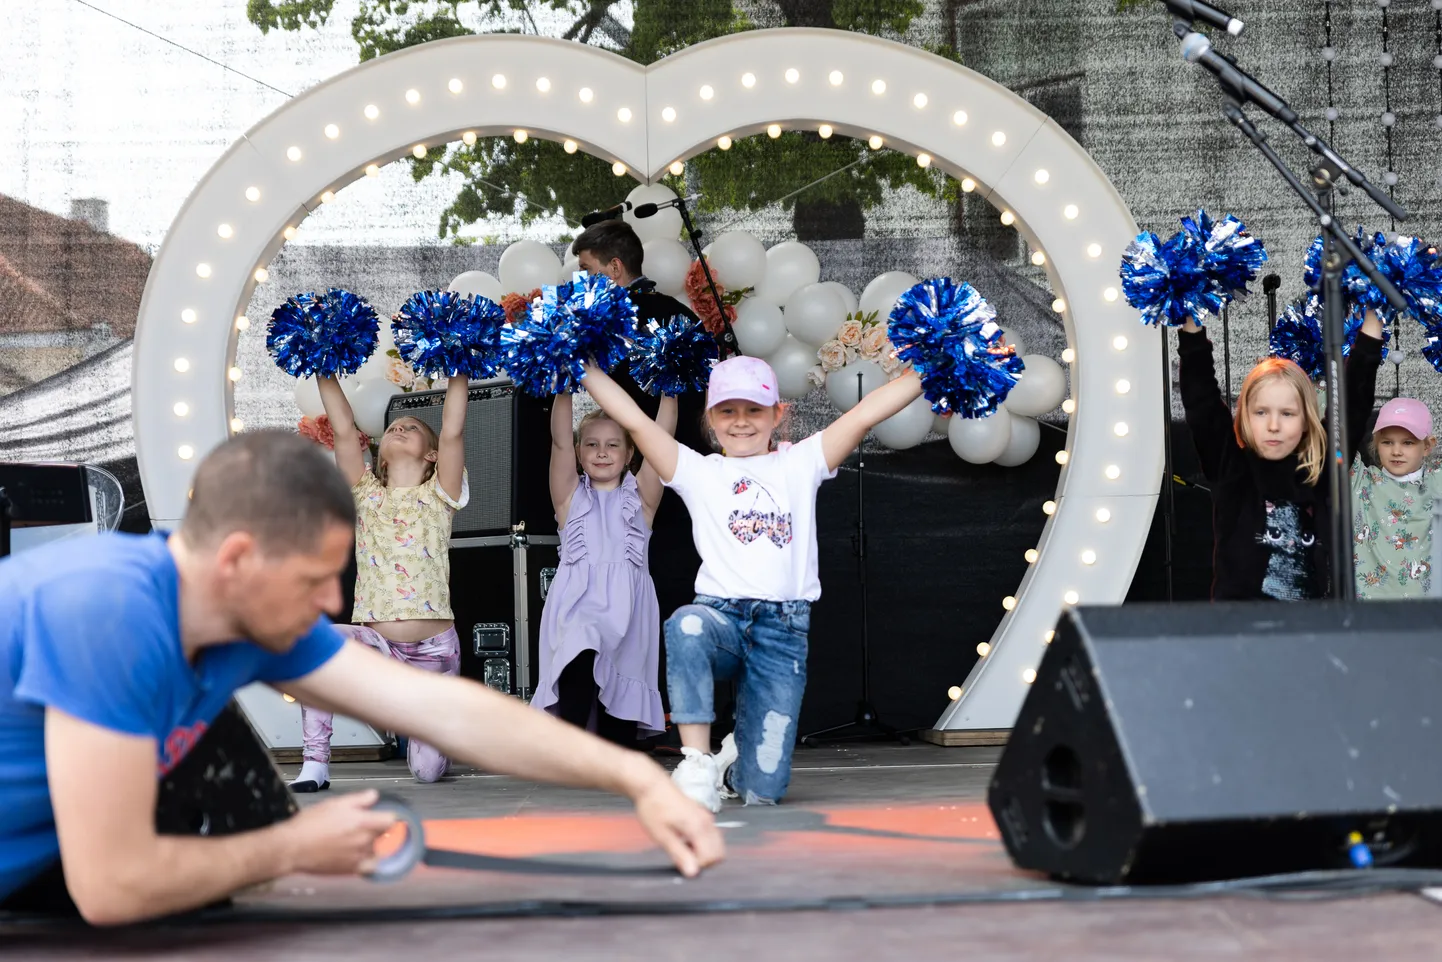 Lastekaitsepäeva tegevused Kuressaares 1. juunil.